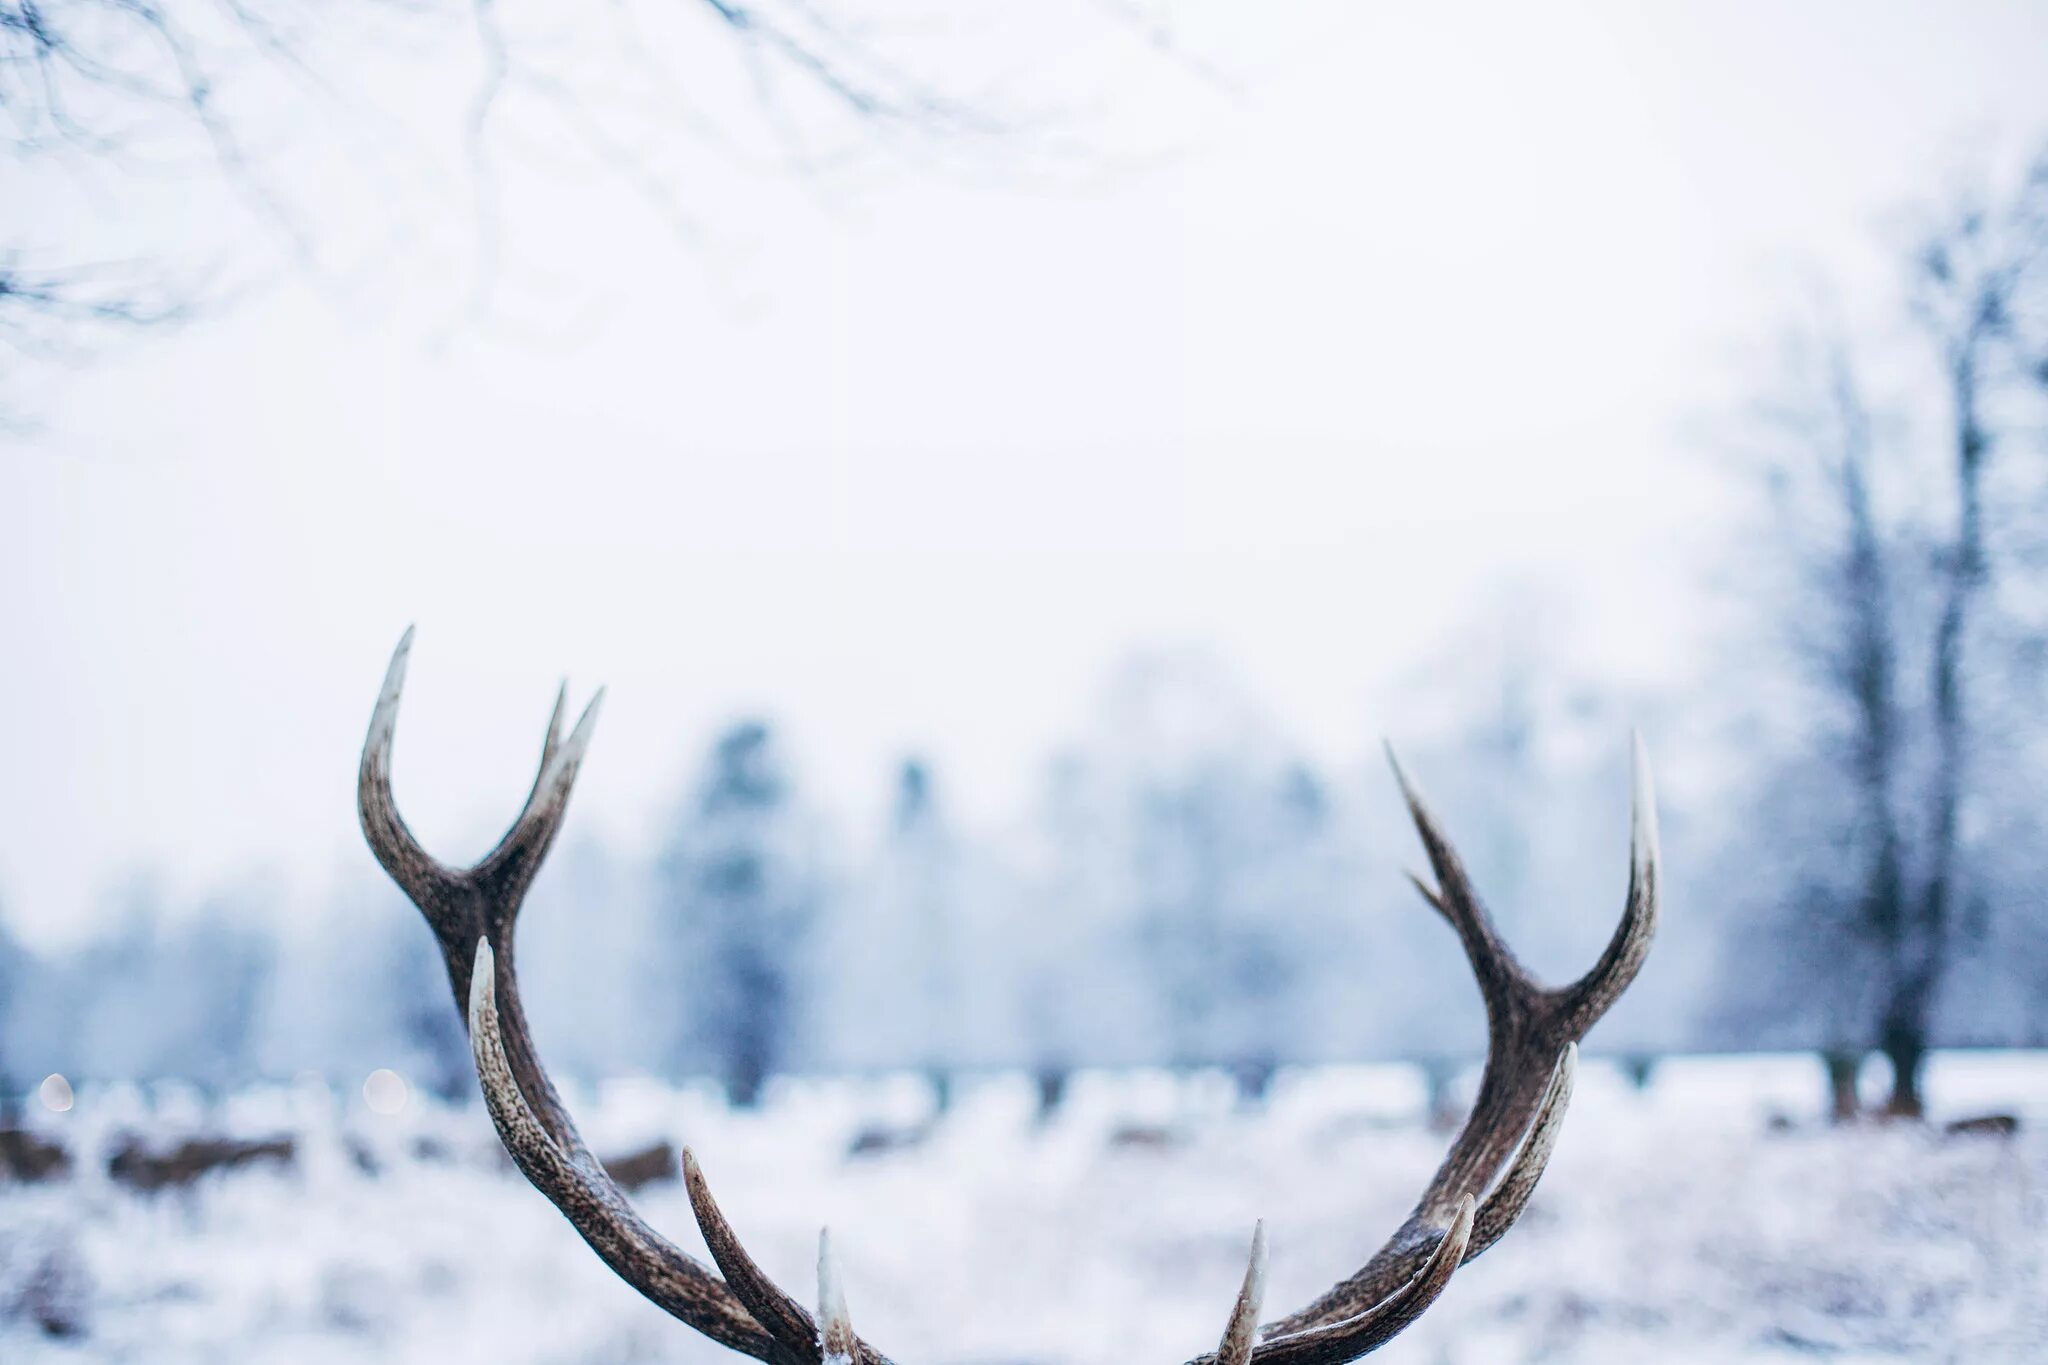 Оленьи рога / Antlers. Олень зимой. Олень в снегу. Оленьи рога зимой.